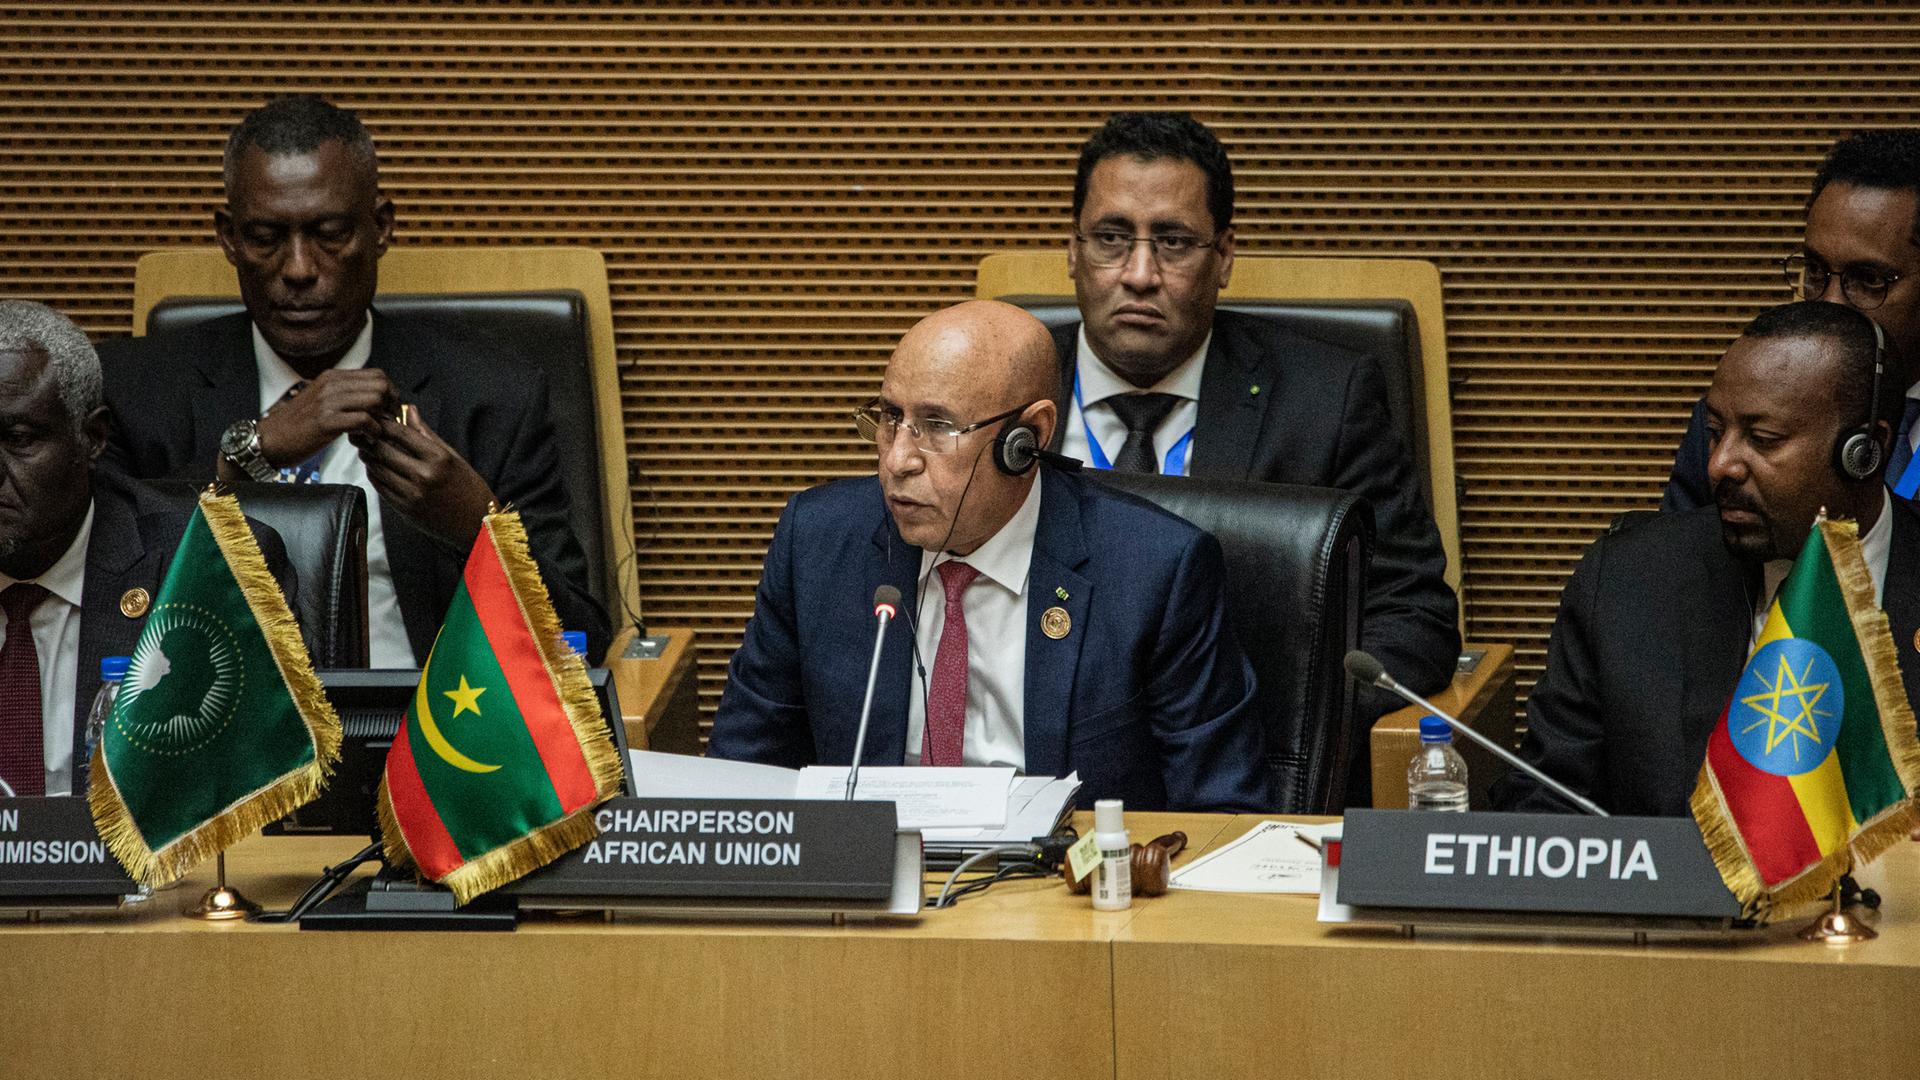 Vertreter der Afrikanischen Union sitzen auf Sesseln in einem Konferenzraum.